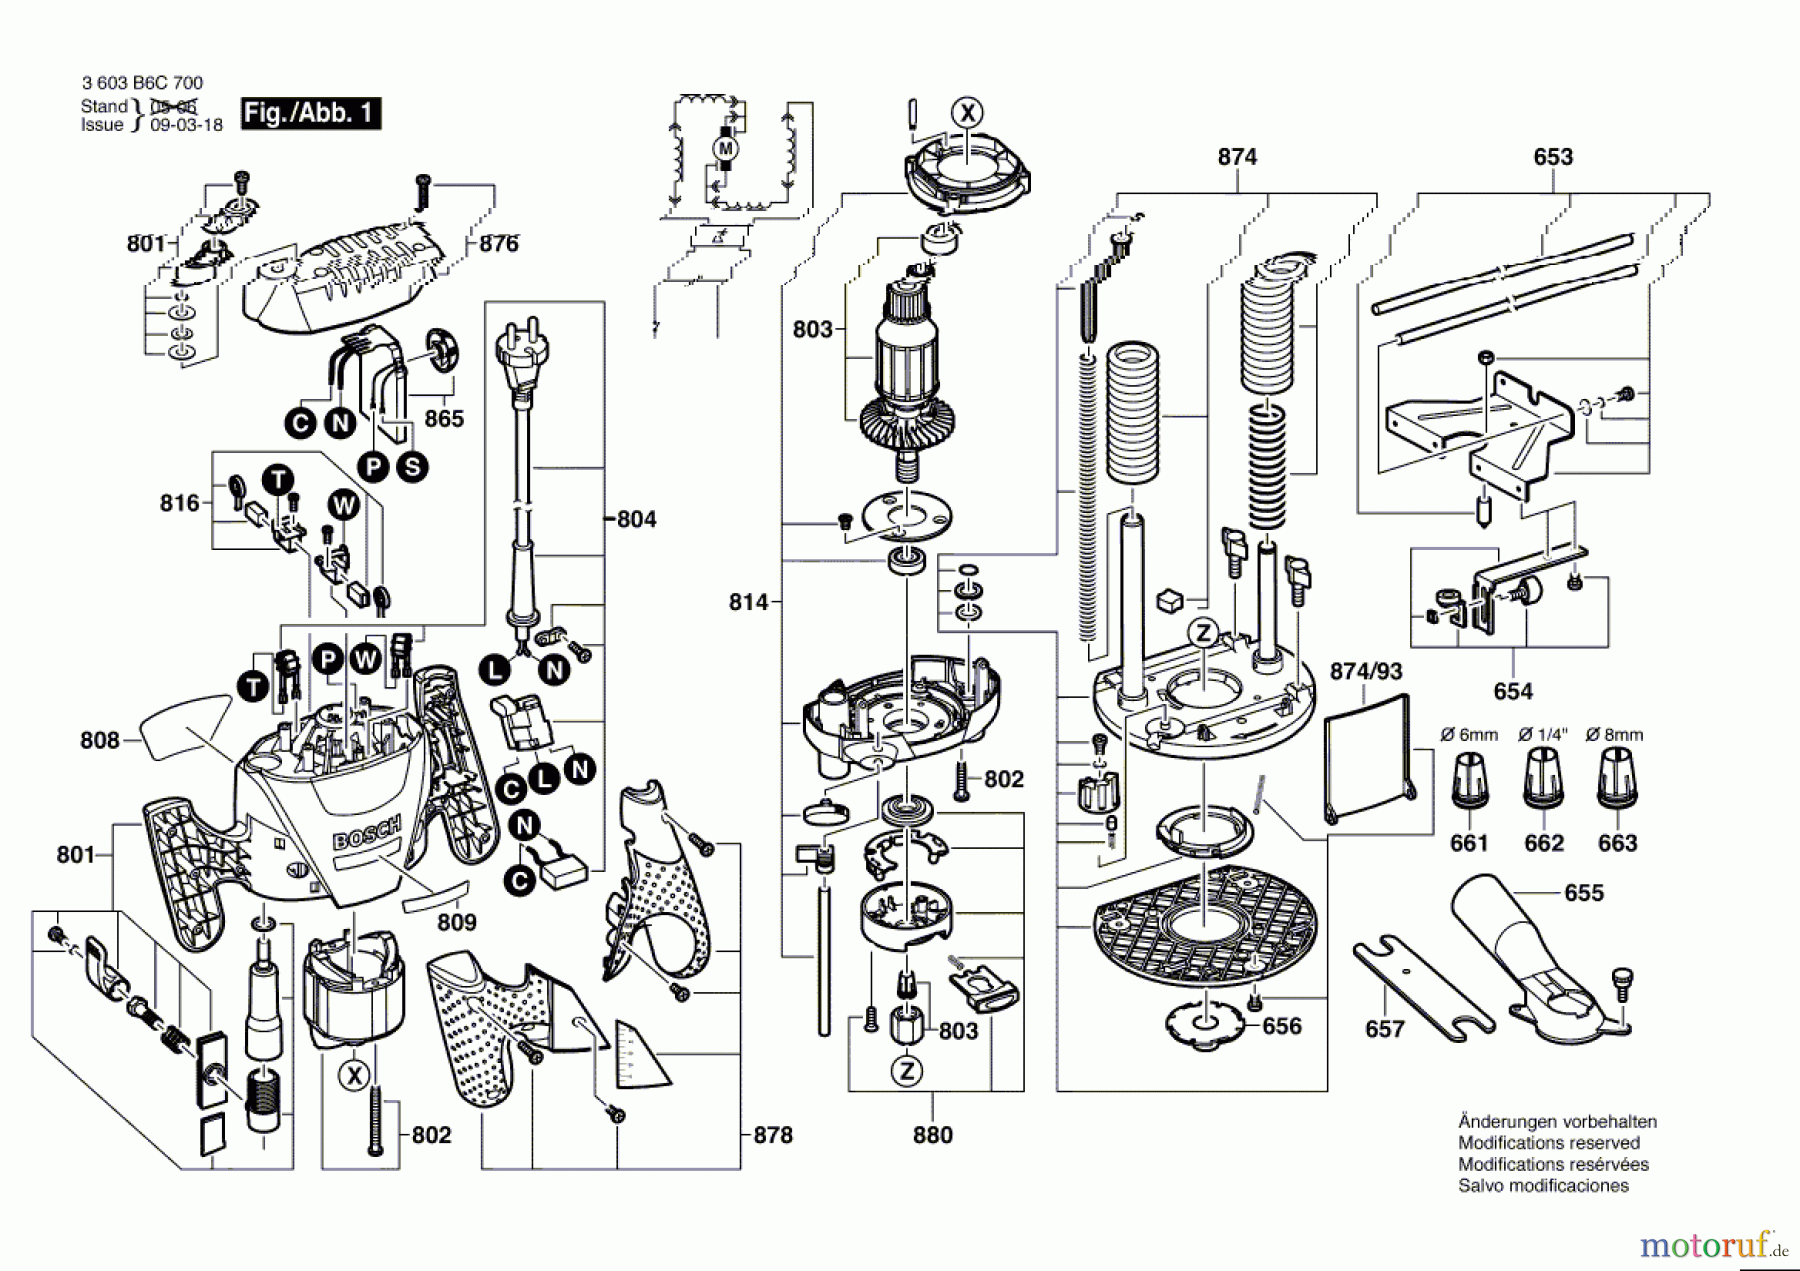  Bosch Werkzeug Oberfräse POF 1300 ACE Seite 1